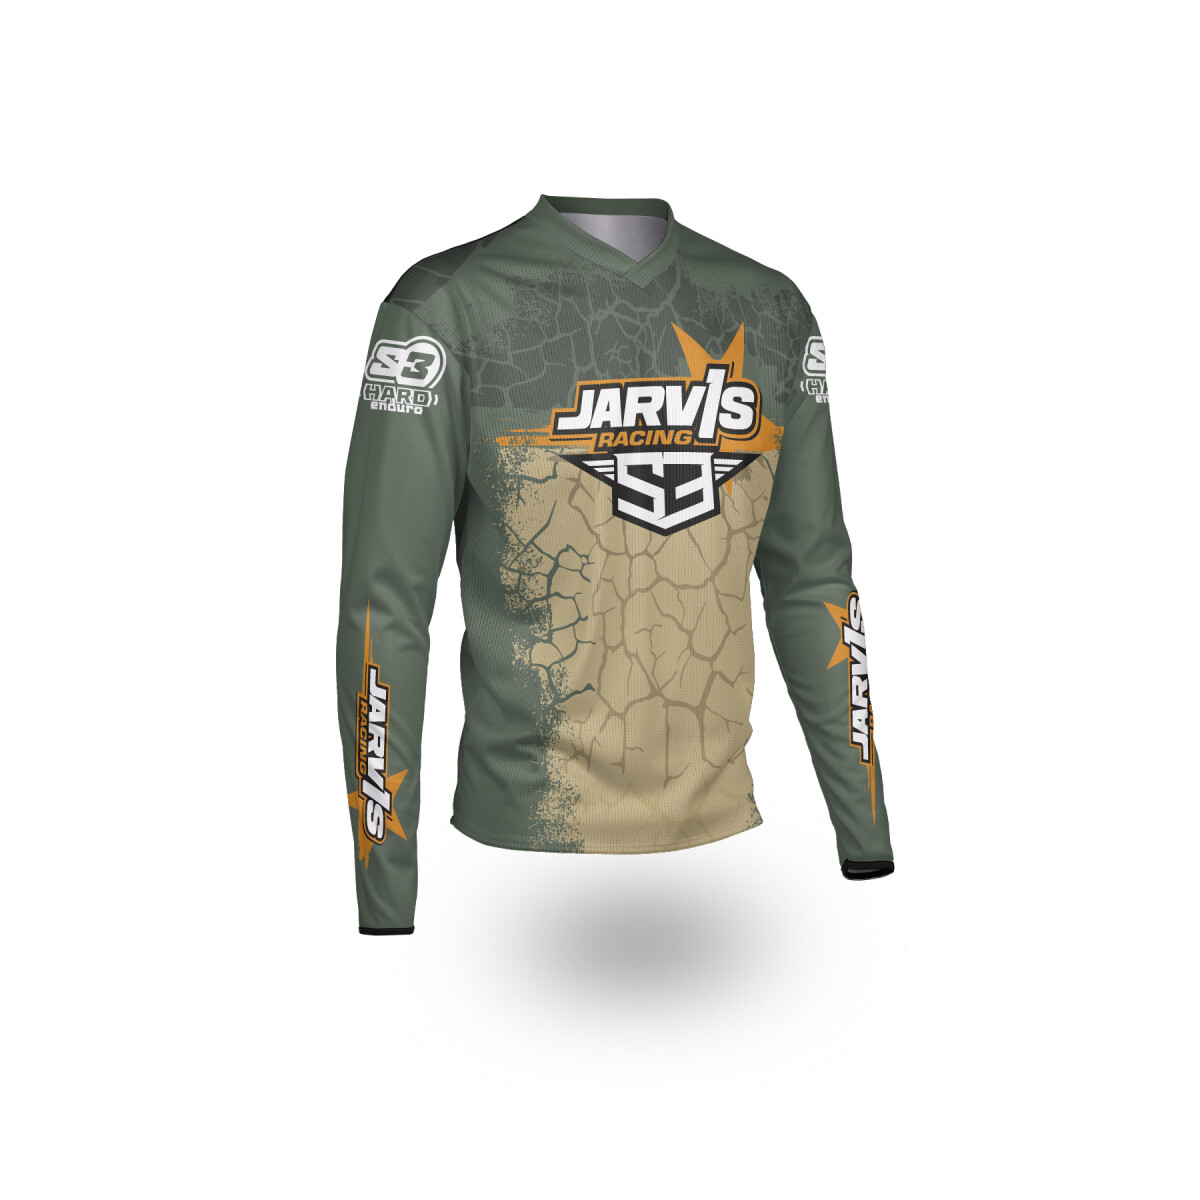 Jarvis Race Gear Jersey